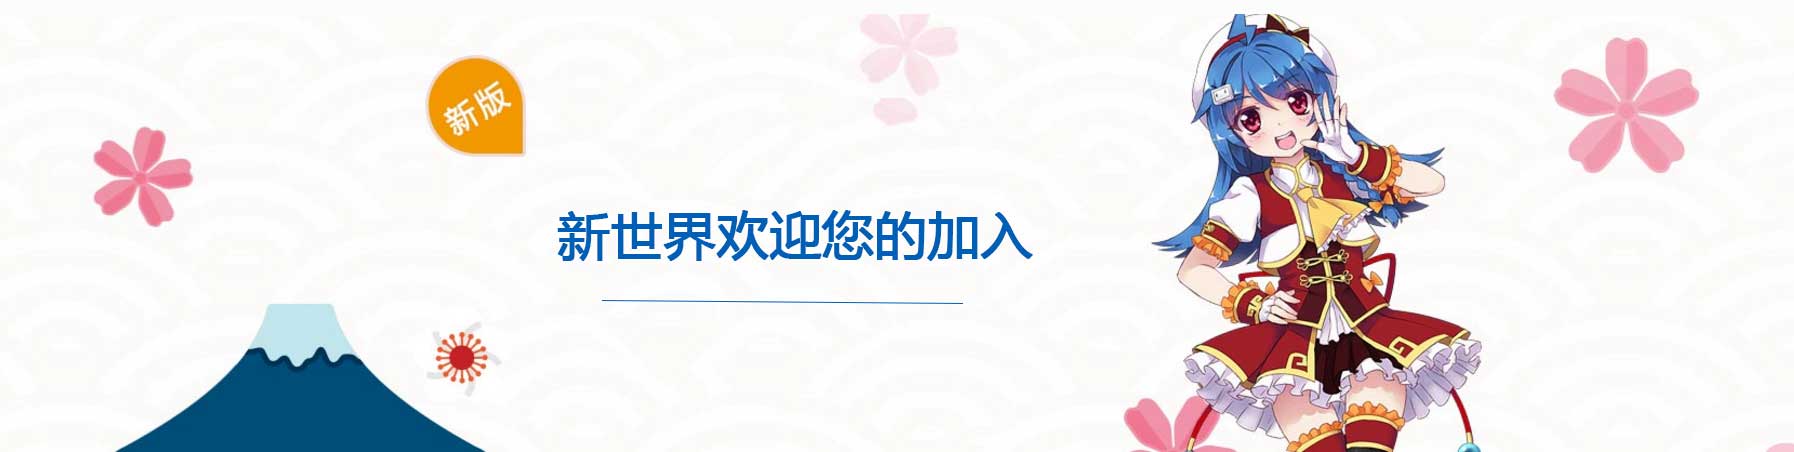 北京日语学习班--新世界欢迎您的加入